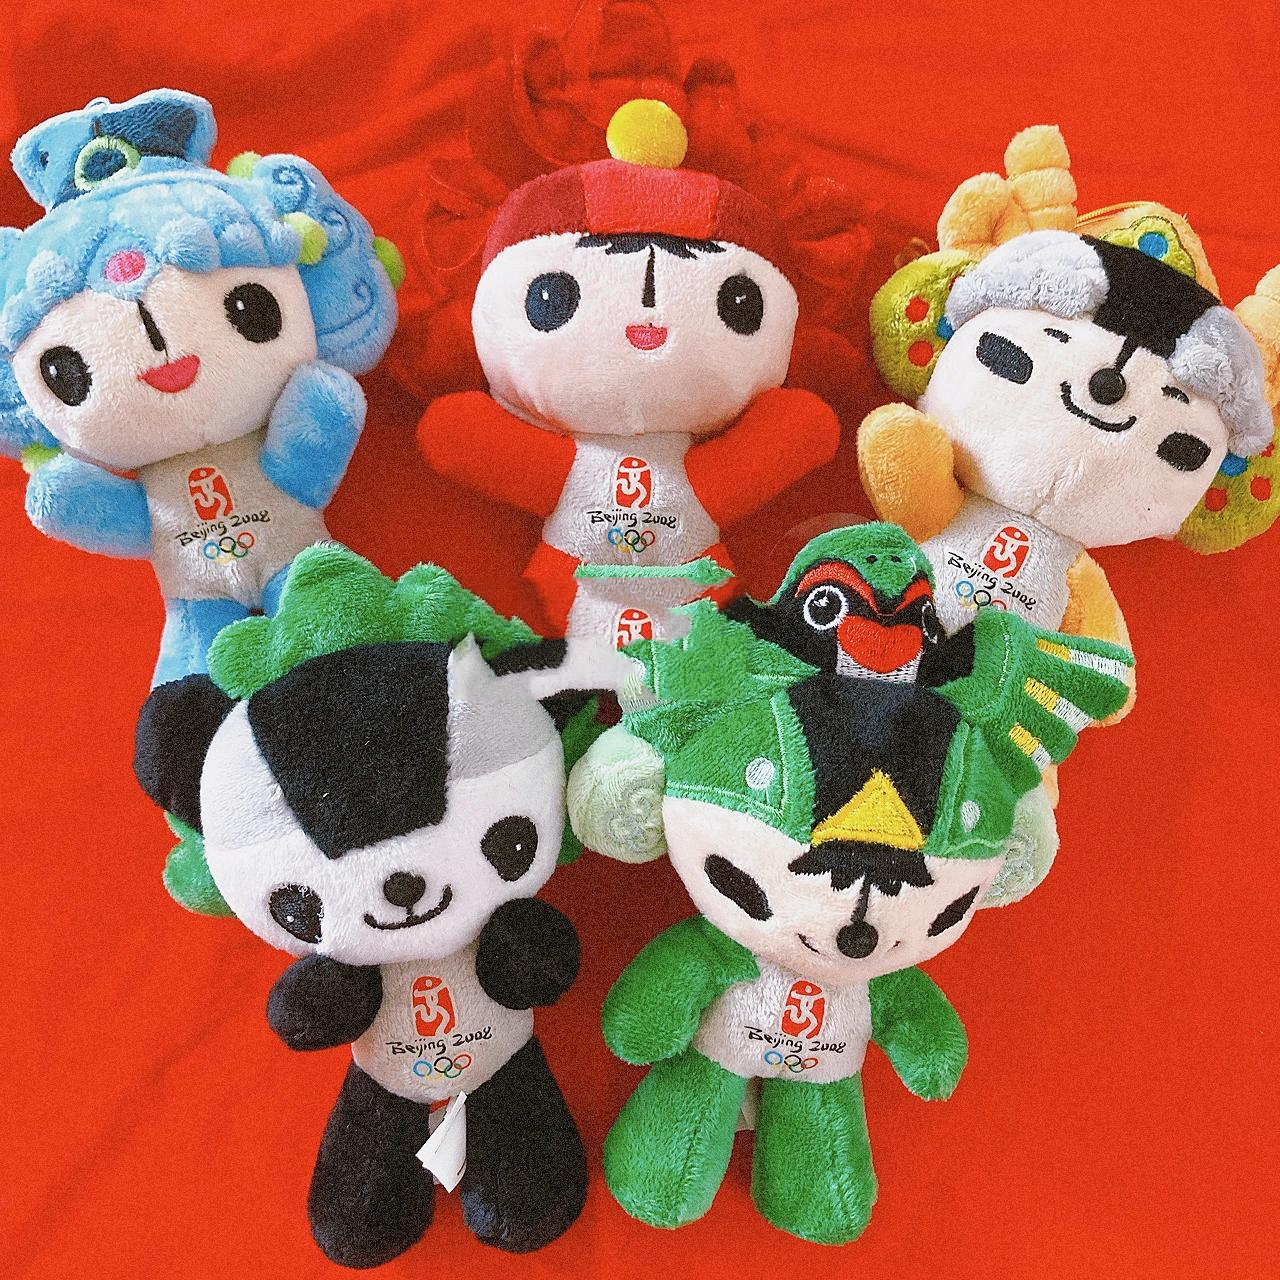 中国奥运会吉祥物福娃图片